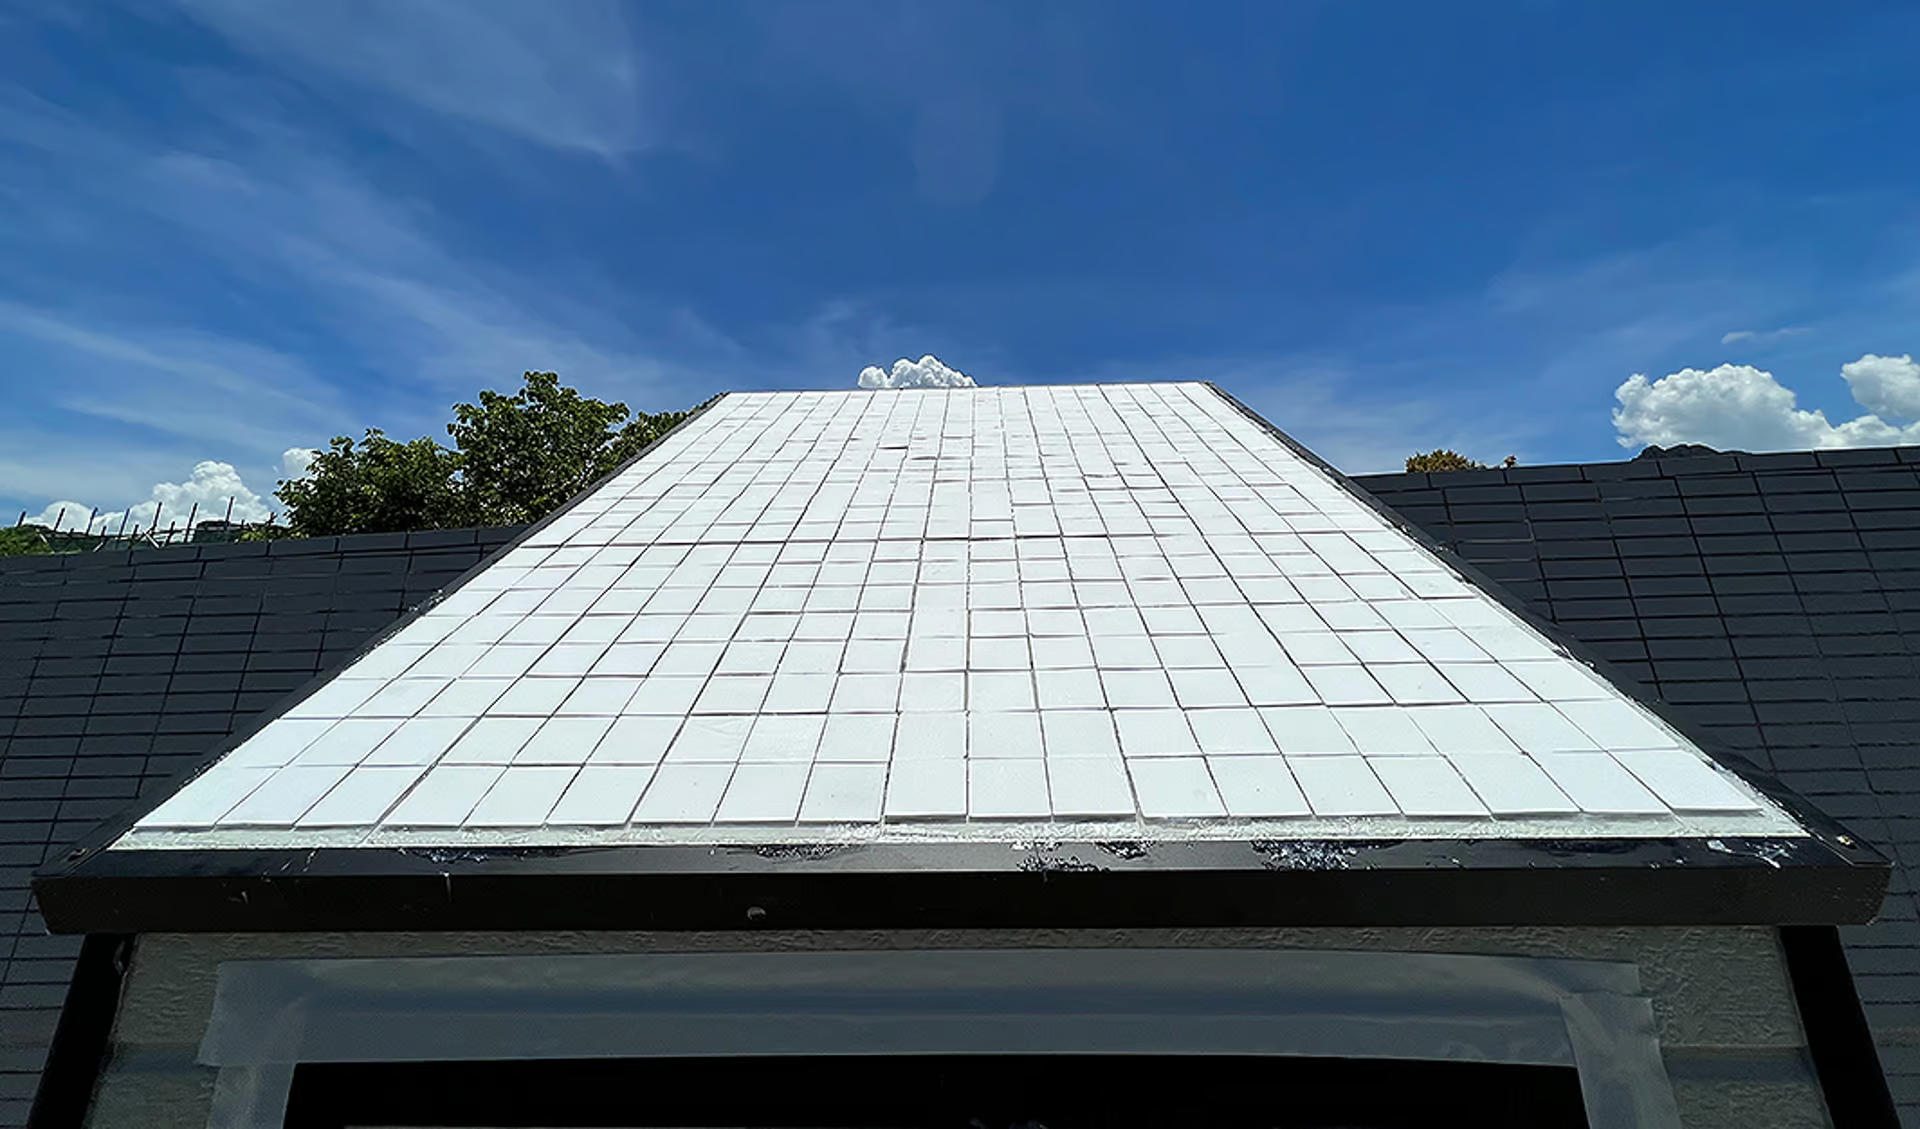 تجربة السيراميك الأبيض على اسطح احد المنازل لتخفيف درجة الحرارة - جامعة هونكونغ